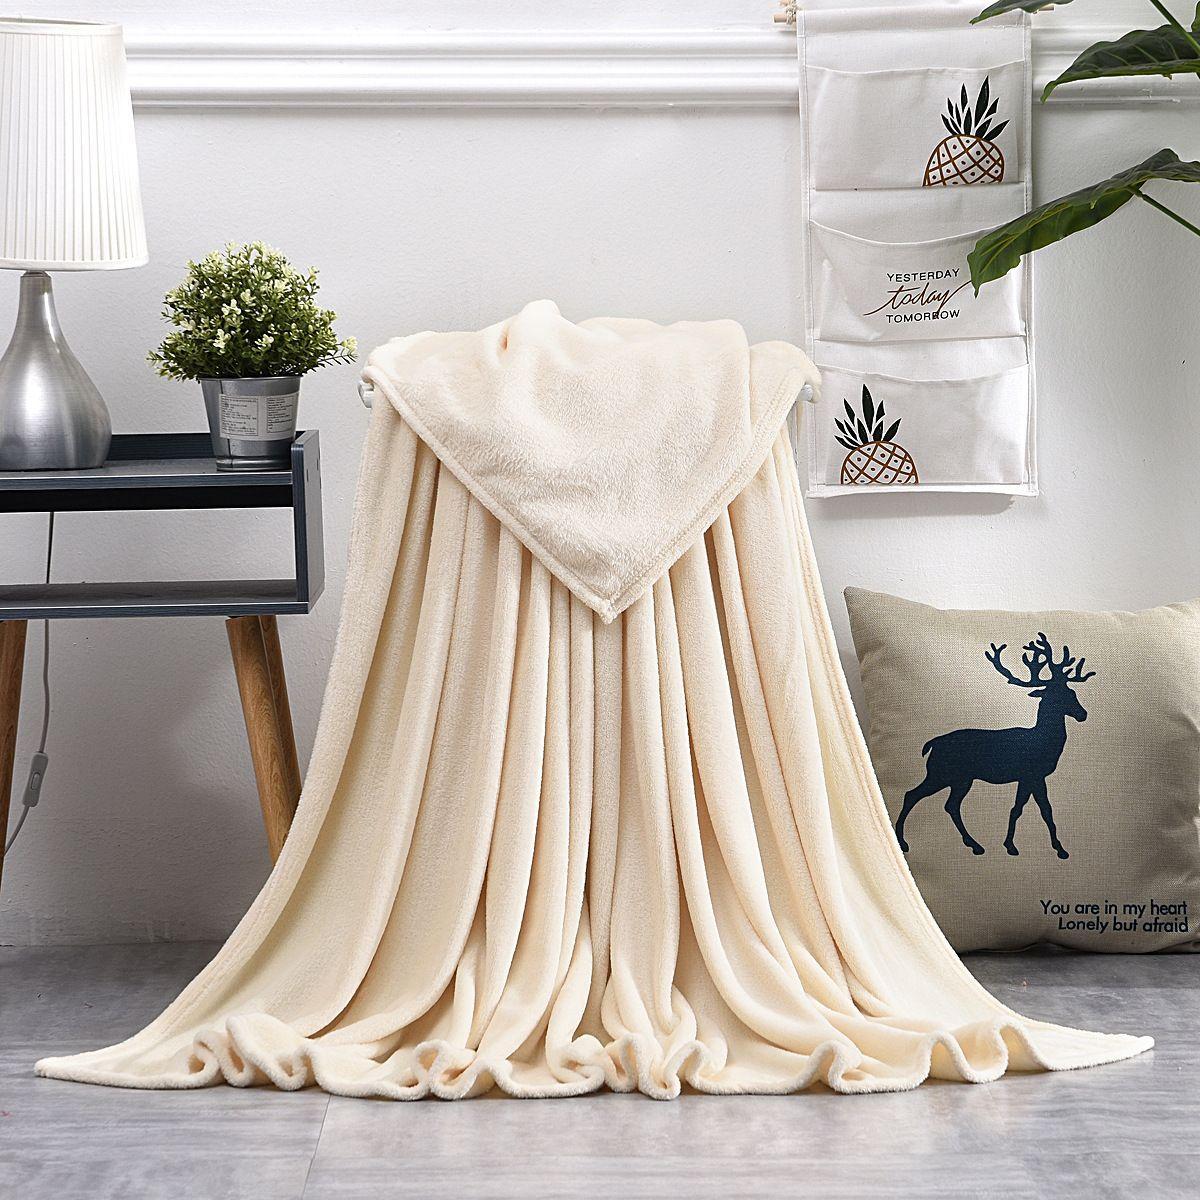 Fleece blanket, bedspread 180x200 cm - beige